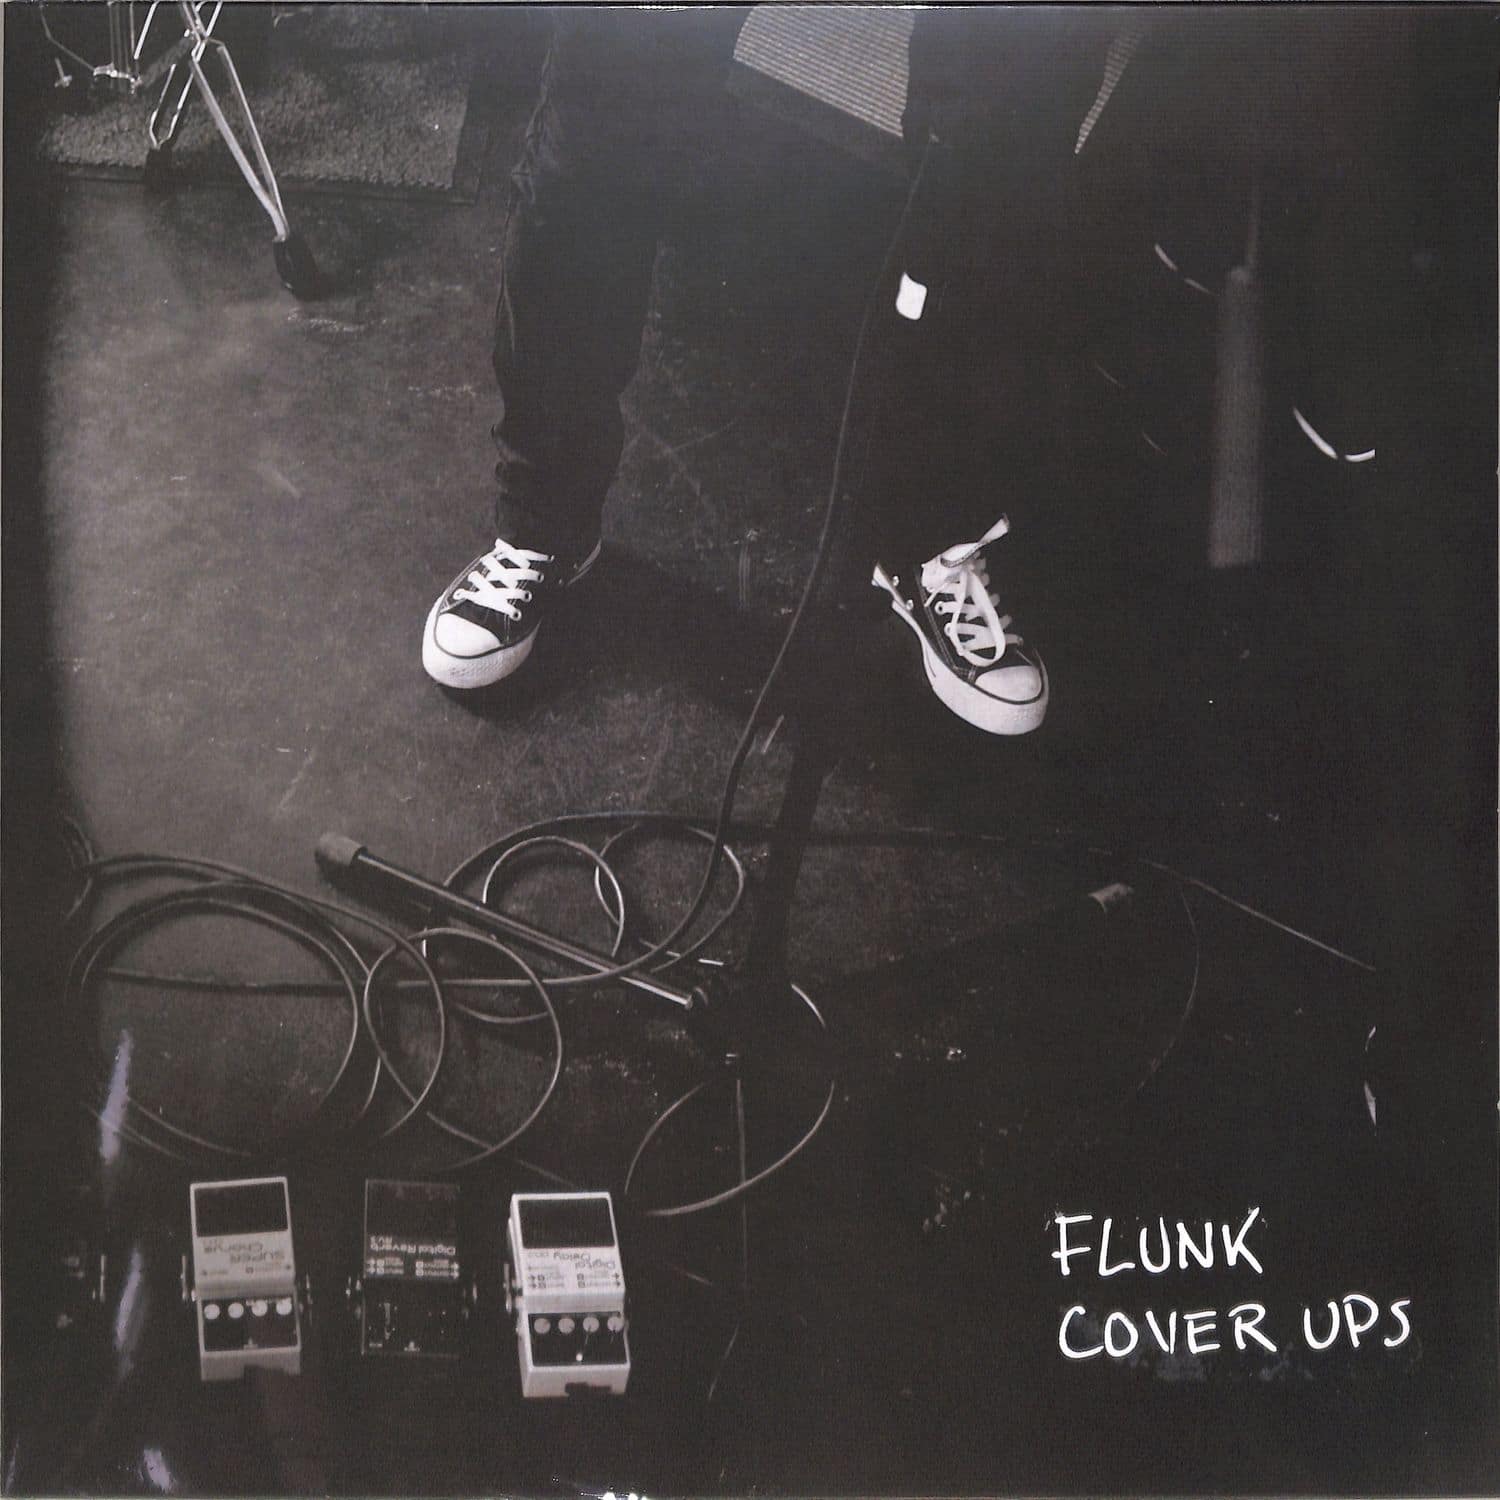 Flunk - COVER UPS, VOL 1 & 2 